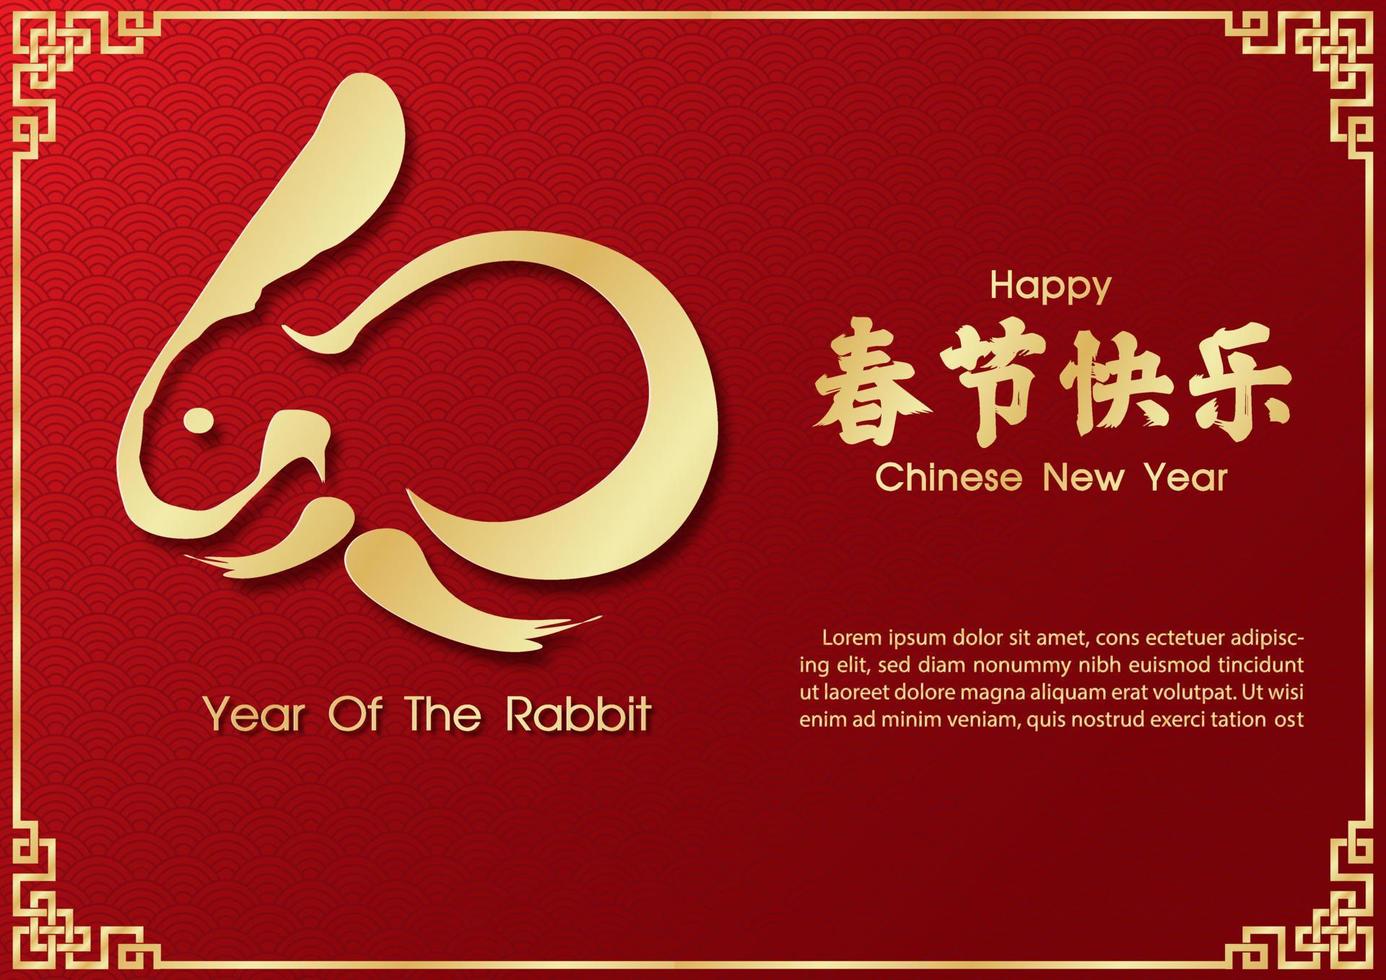 conejito dorado en estilo de pincel chino con letras chinas y textos de ejemplo sobre patrón de onda y fondo rojo los textos chinos significan feliz año nuevo chino en inglés vector